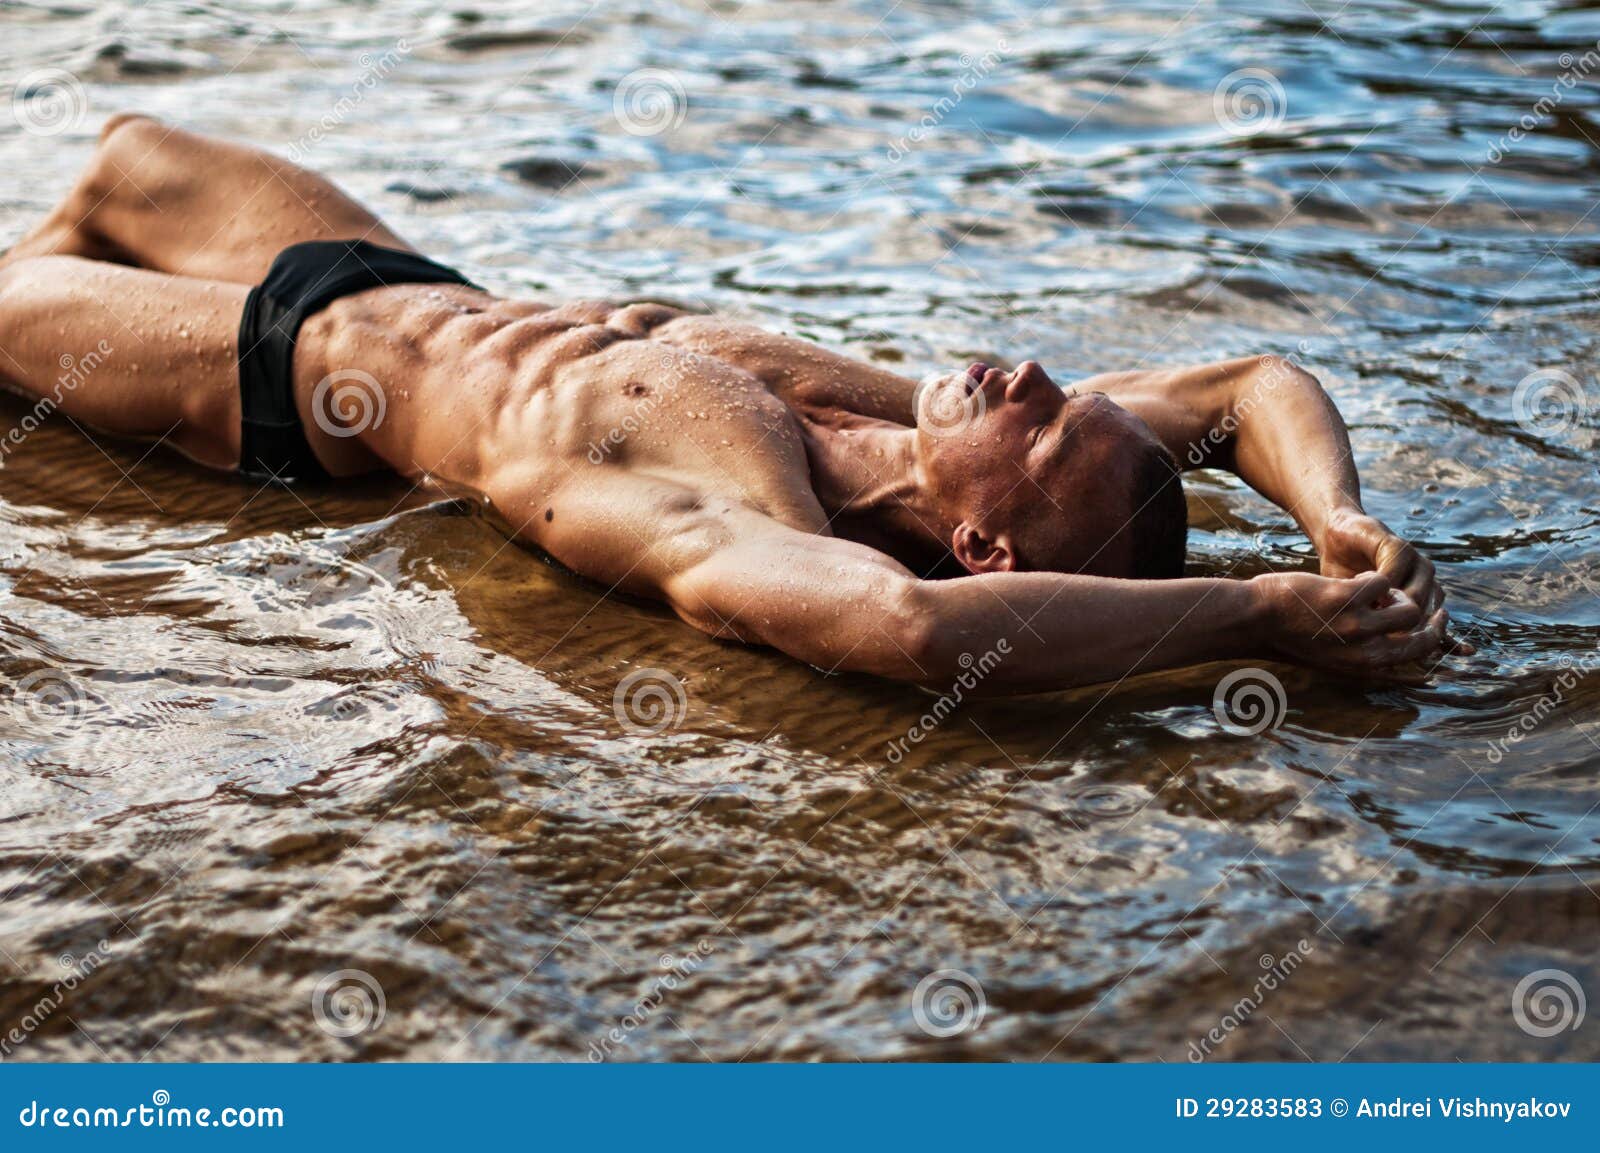 Красивый парень в воде. Мужское тело в воде. Мужчина лежит на пляже.